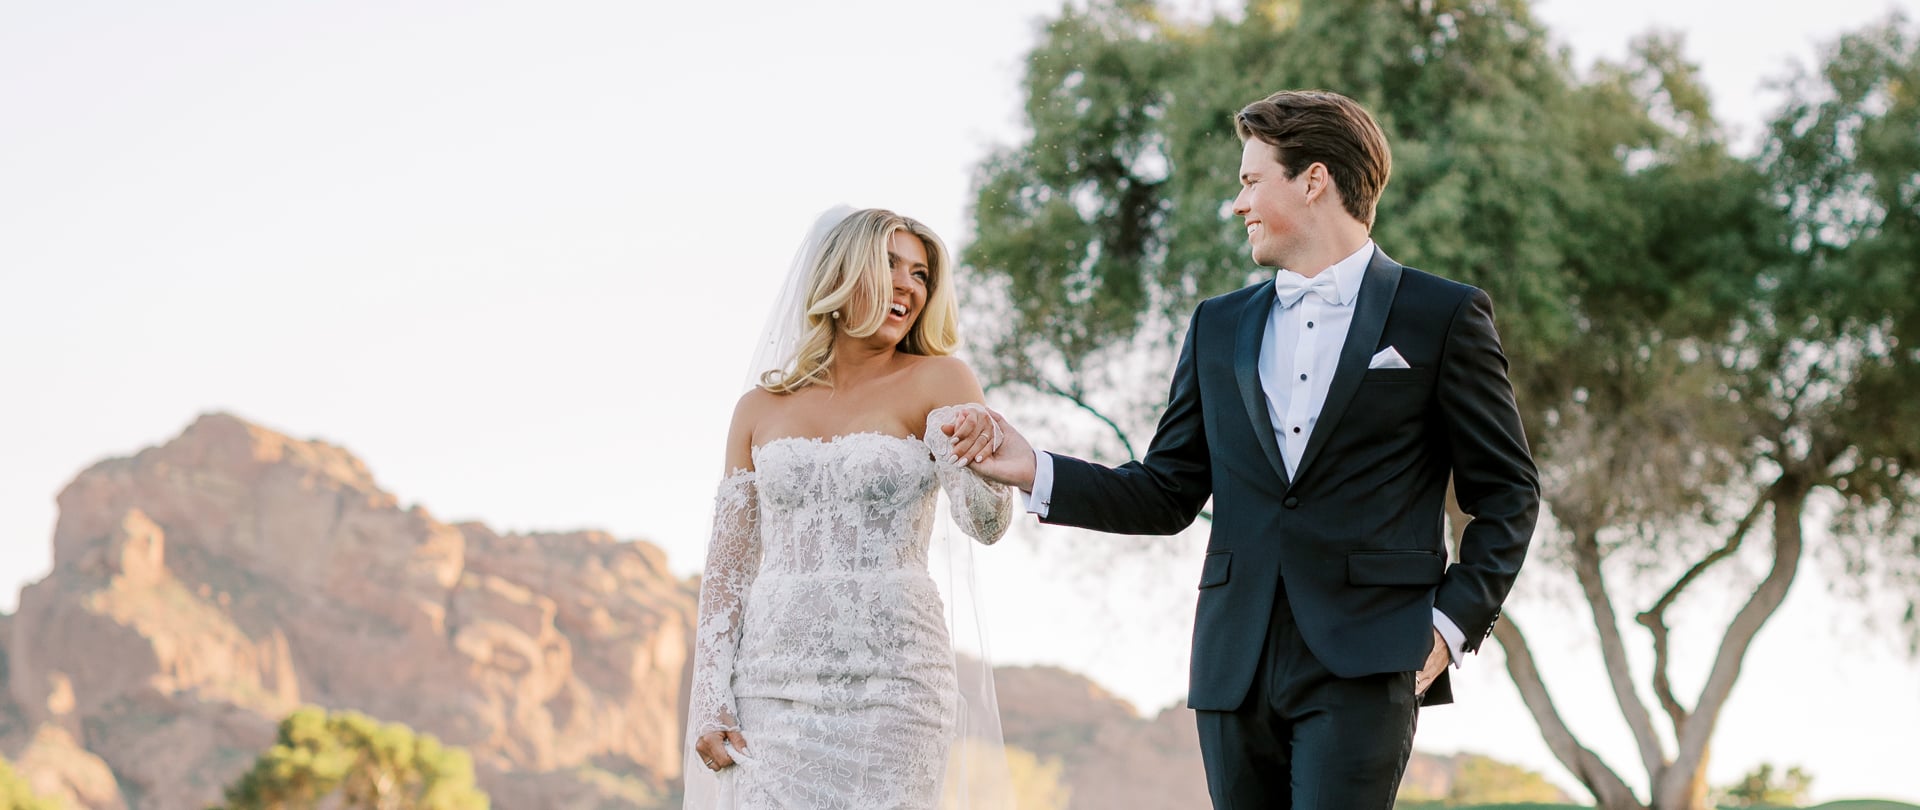 Paige & Keaton Wedding Video Filmed atArizona,United States